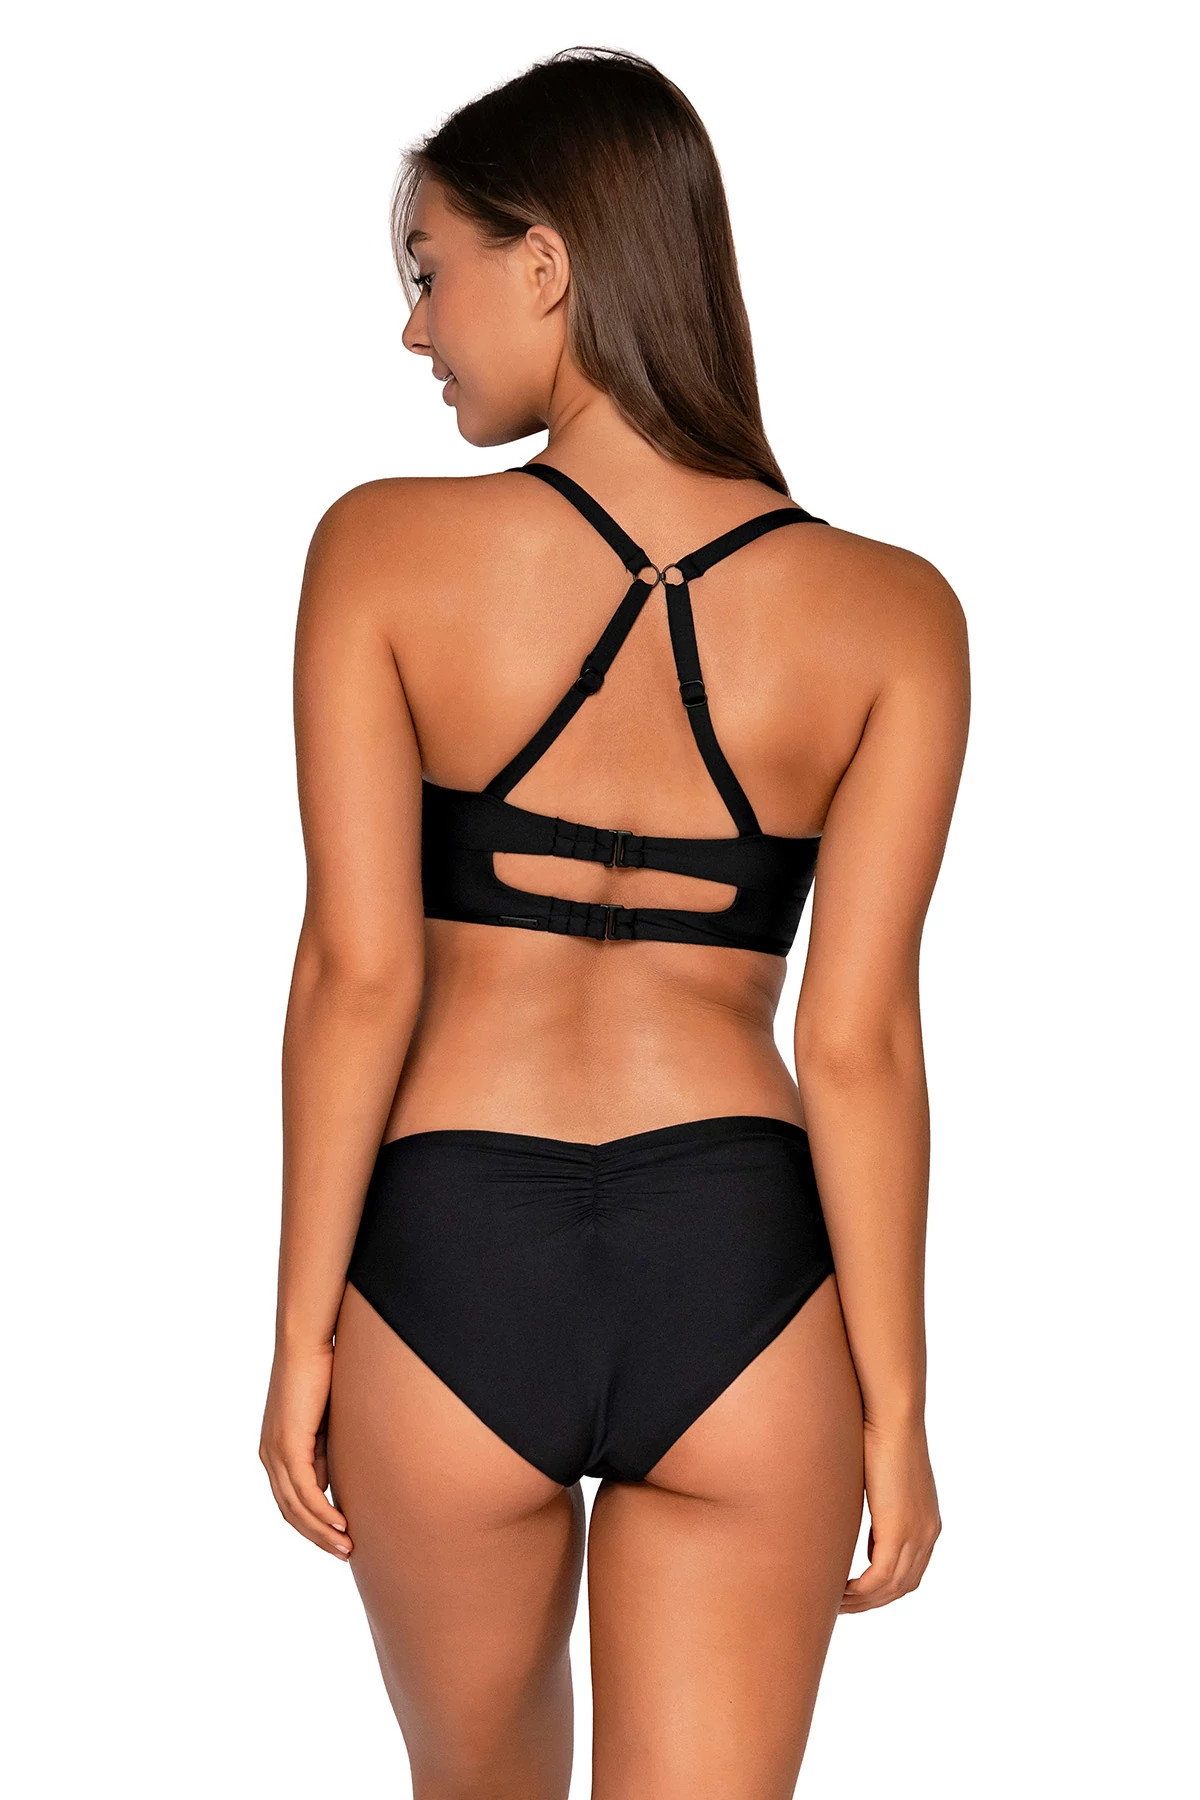 BLACK Colette Underwire Bralette Bikini Top (E-H Cup) image number 2